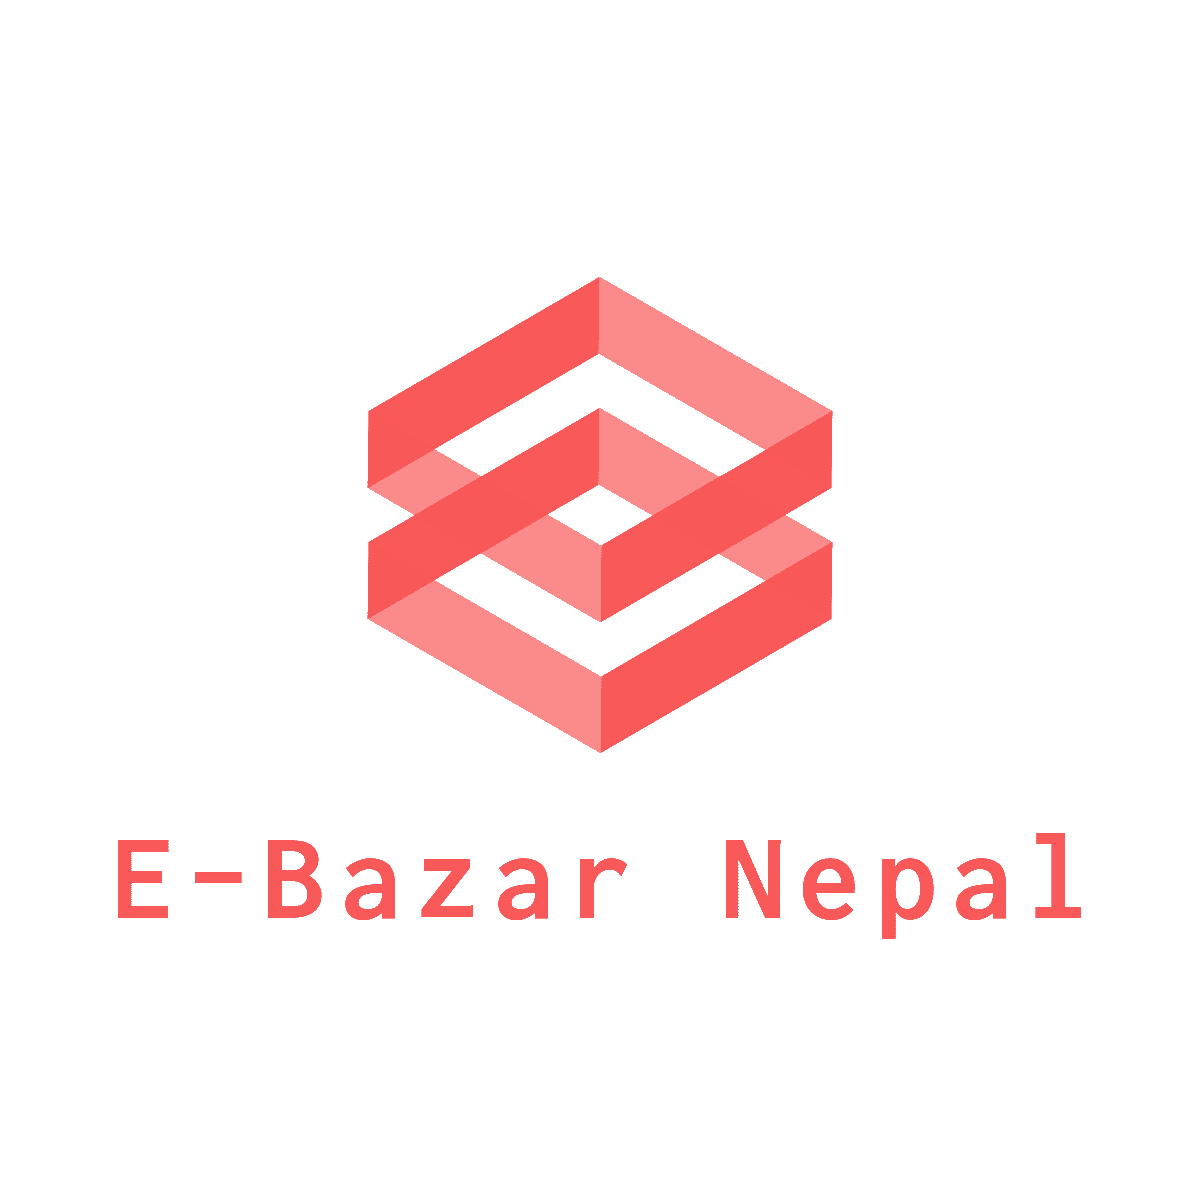 E-Bazar Nepal